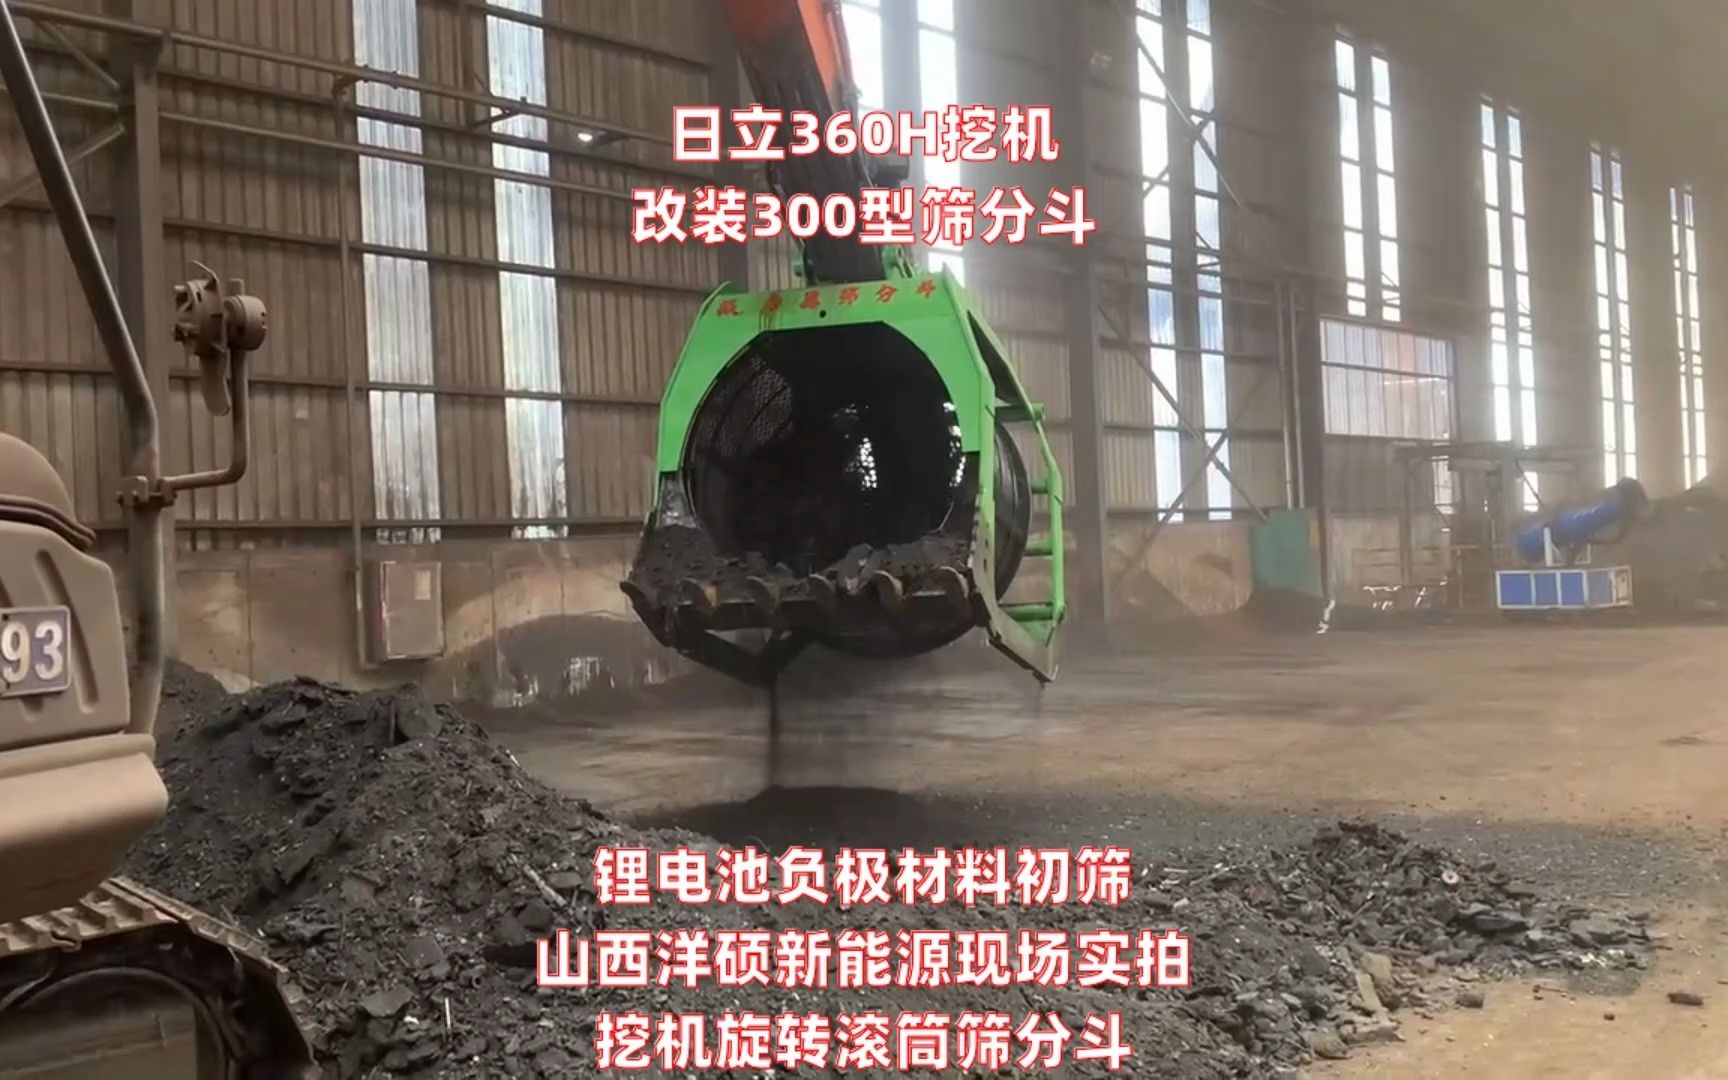 l56-98Z4-9ZZ7 工程用水泥再生斗辽宁锦州挖机砂石筛分铲斗-哔哩哔哩